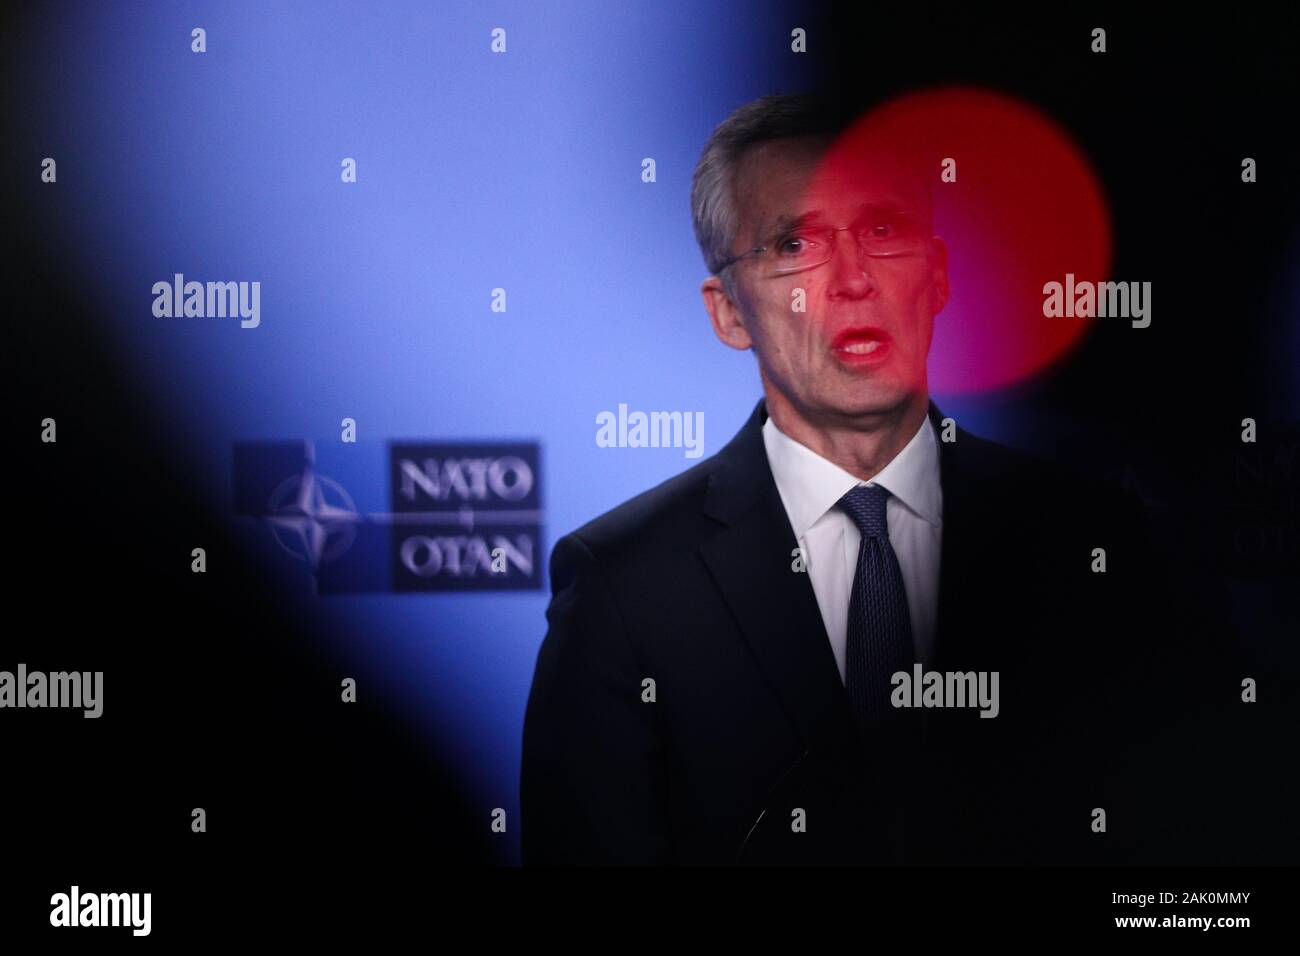 (200106) - Brüssel, Januar 6, 2020 (Xinhua) - NATO-Generalsekretär Jens Stoltenberg spricht während einer Pressekonferenz nach einer Sitzung des NATO-Rates auf Botschafterebene, im NATO-Hauptquartier in Brüssel, Belgien, Januar 6, 2020. (Xinhua / Zheng Huansong) Stockfoto